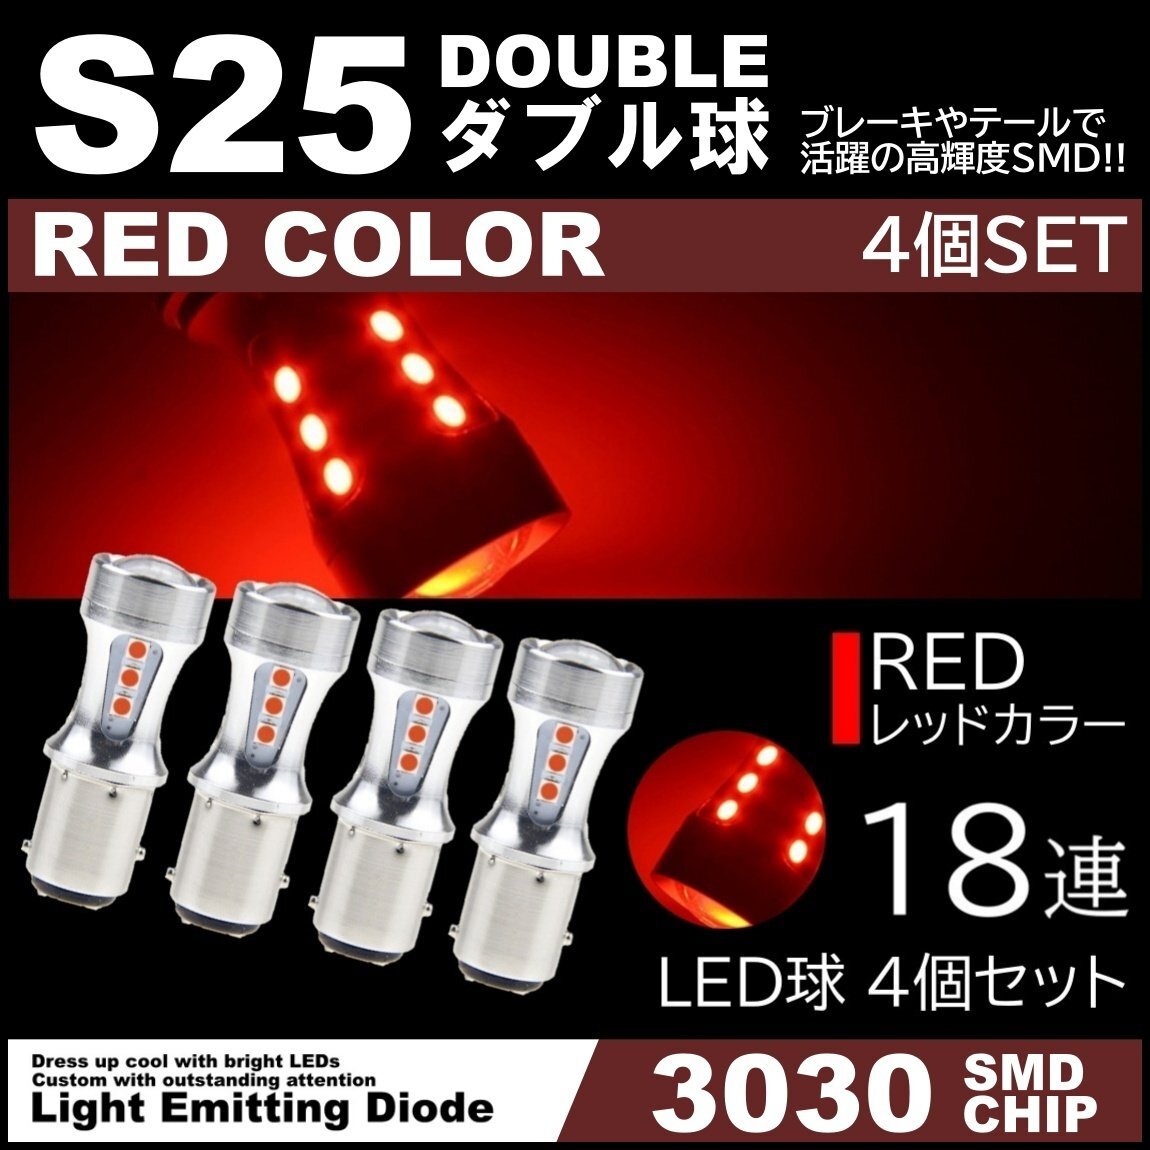 爆光LED 12V 18SMD 3030SMD レッド 赤 S25 ダブル球 キャンセラー内蔵 テールランプ ブレーキランプ ストップランプ 4個セットの画像1